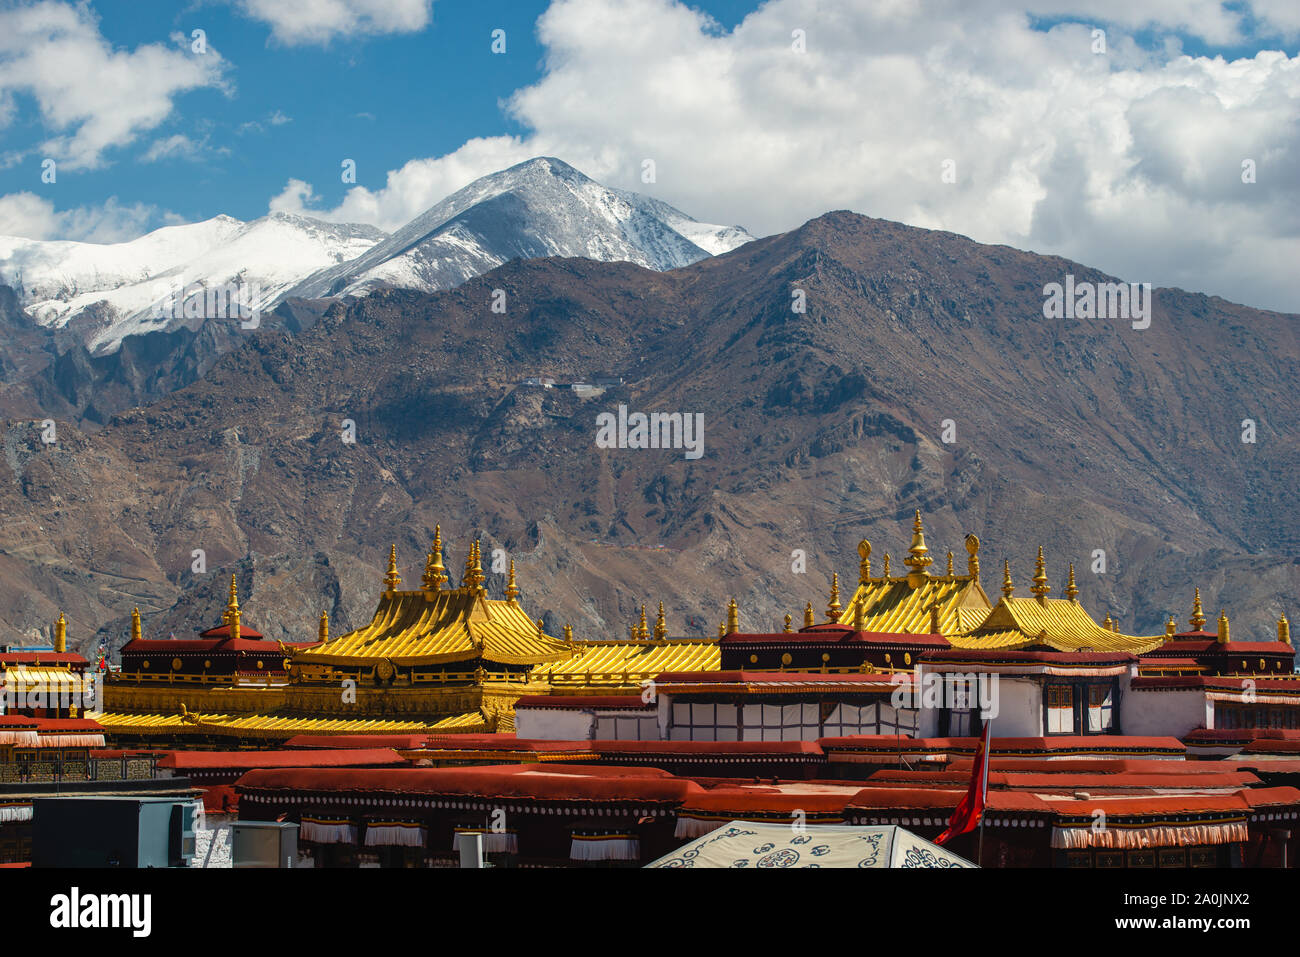 Les toits d'or du Temple de Jokhang position contre des montagnes enneigées à Lhassa, au Tibet. Le temple est le temple le plus saint dans tous les of Tibetan Budd Banque D'Images